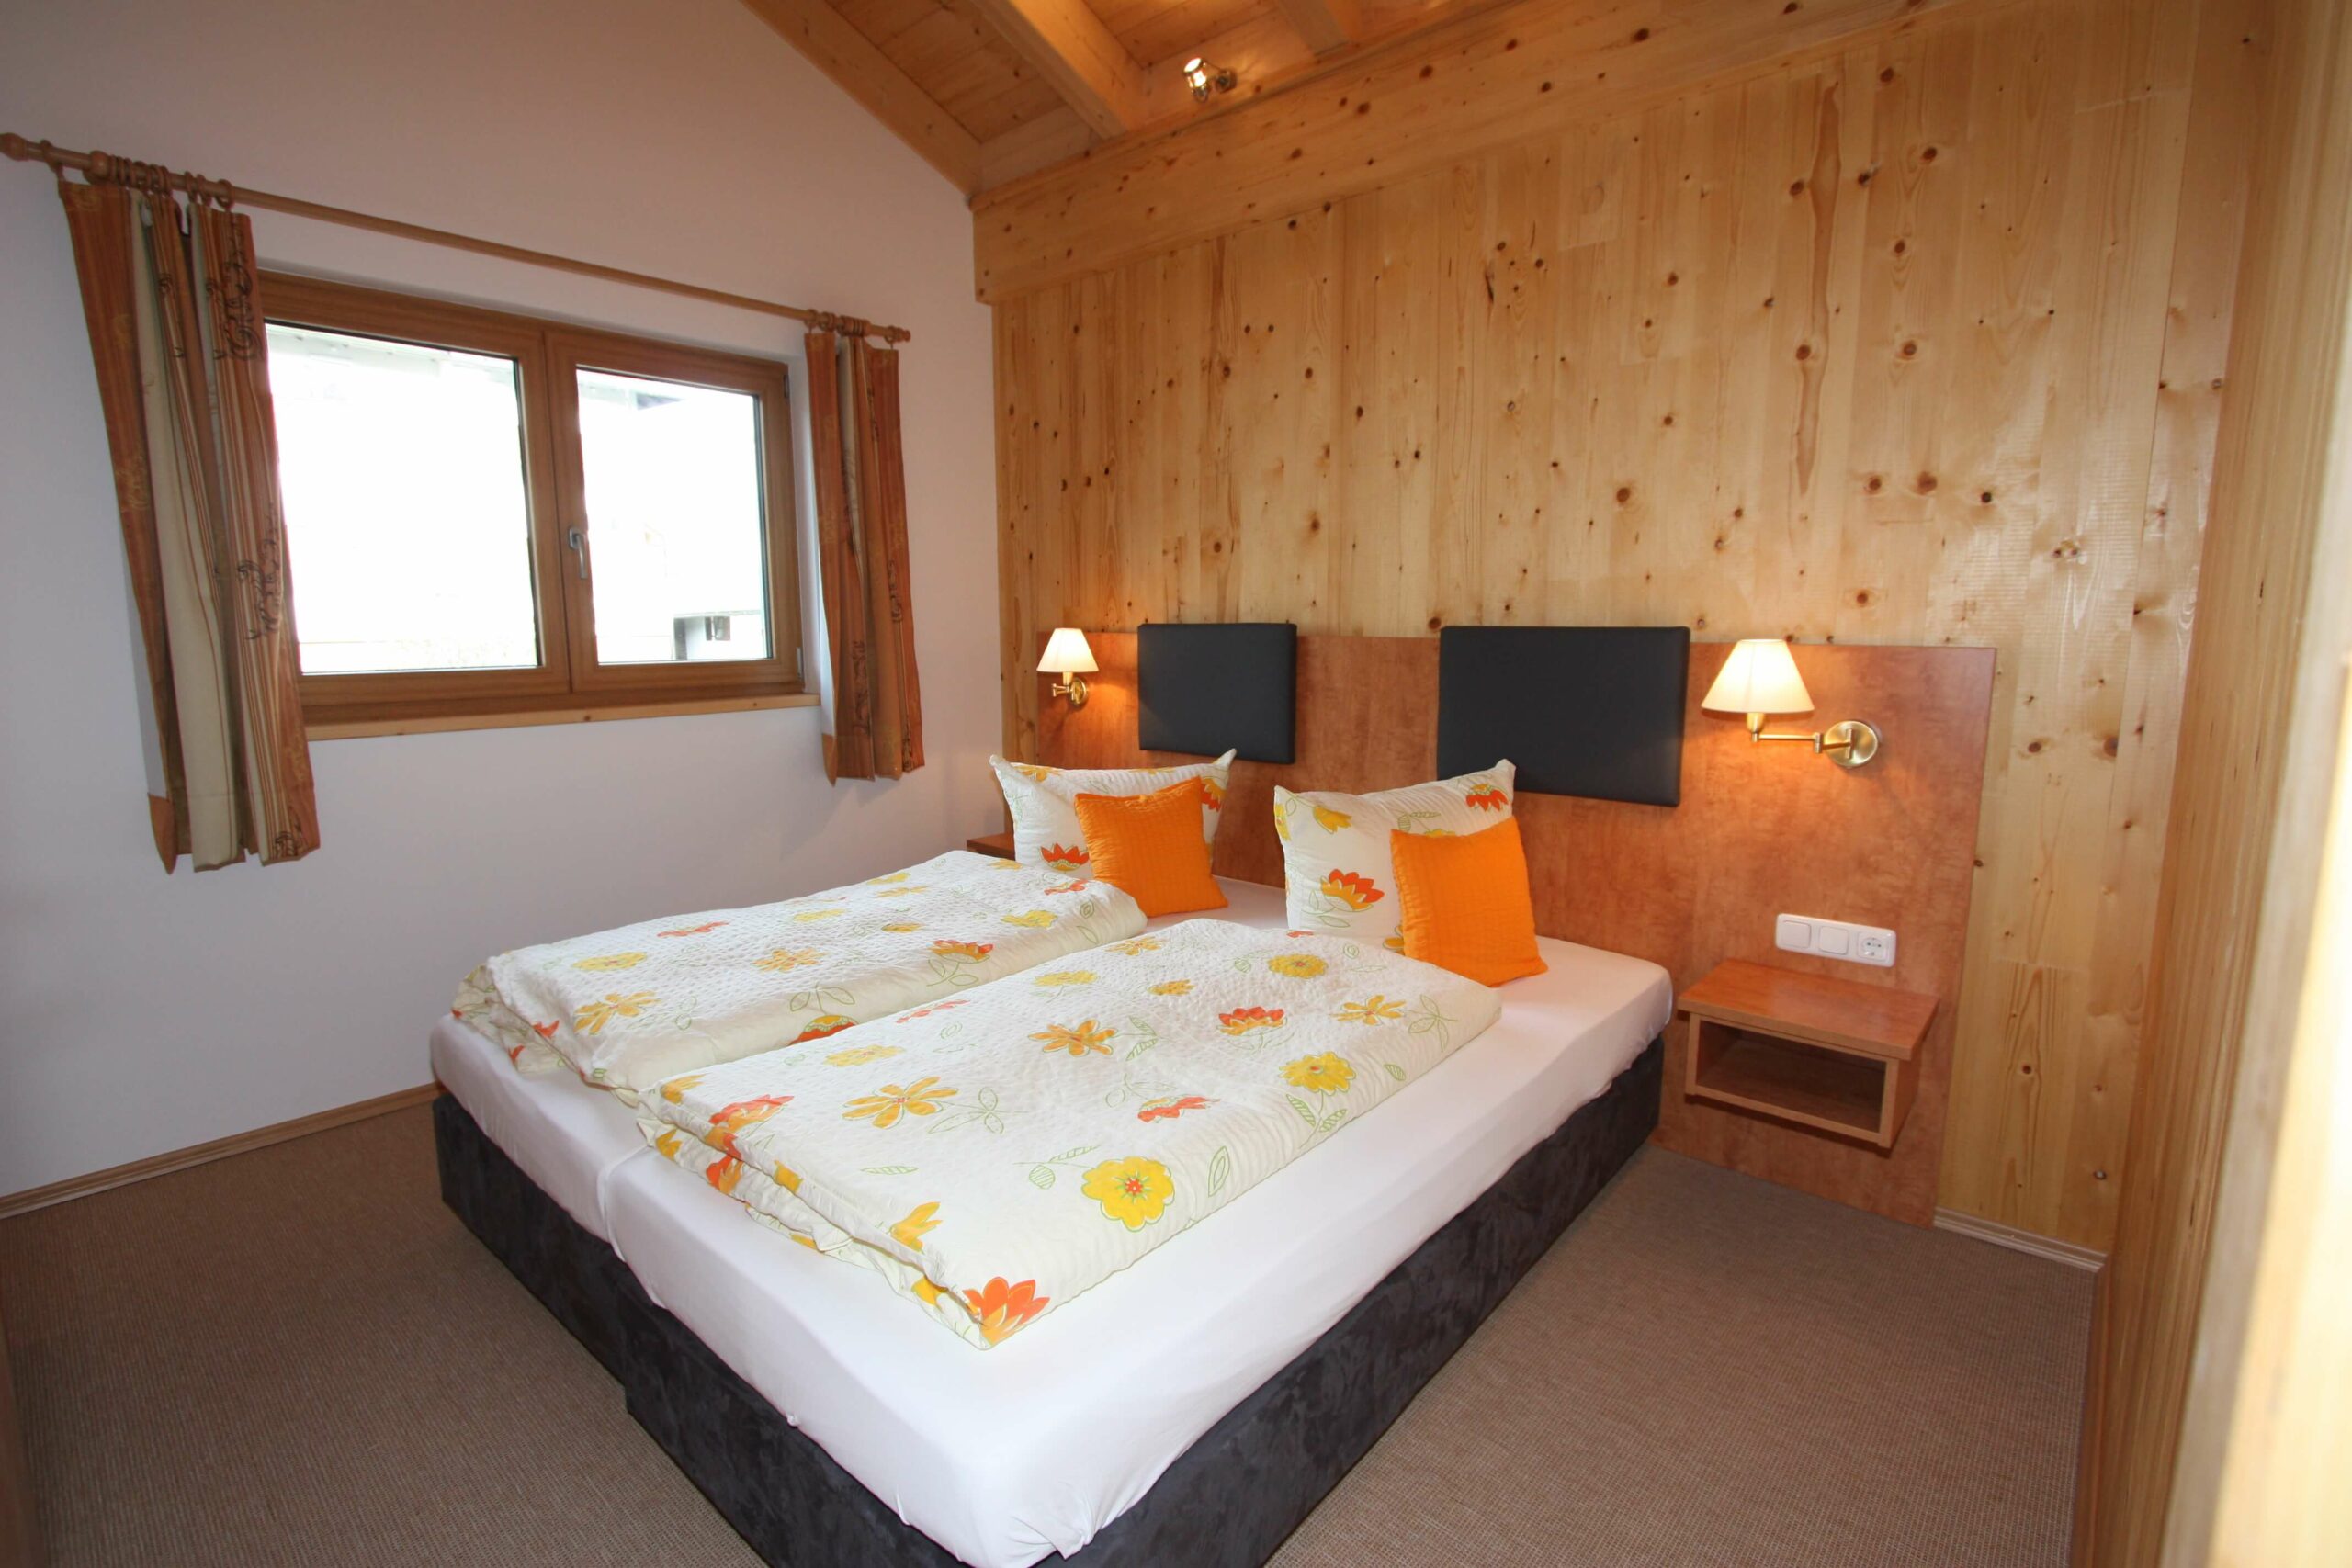 Schlafzimmer in der Ferienwohnung des Hotel Garni Almenrausch und Edelweiß in Garmisch-Patenkirchen